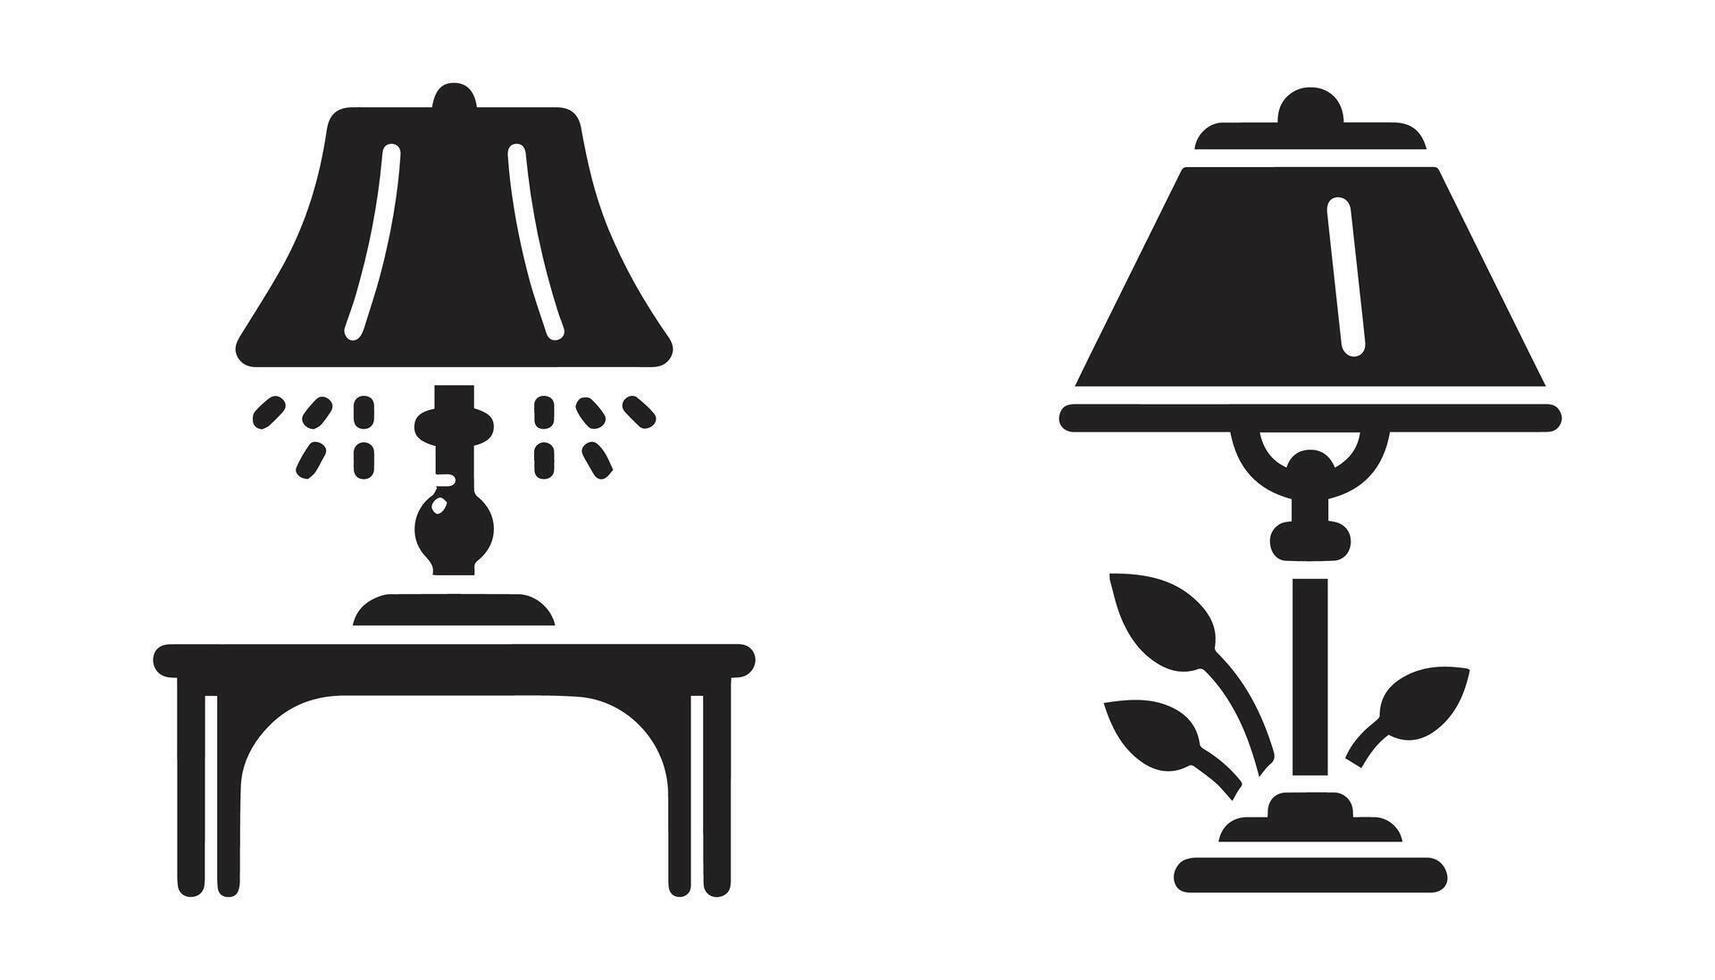 Tabelle Lampe Satz. Lampe Silhouetten. Schreibtisch Lampe Symbol. isoliert auf ein Weiß Hintergrund vektor